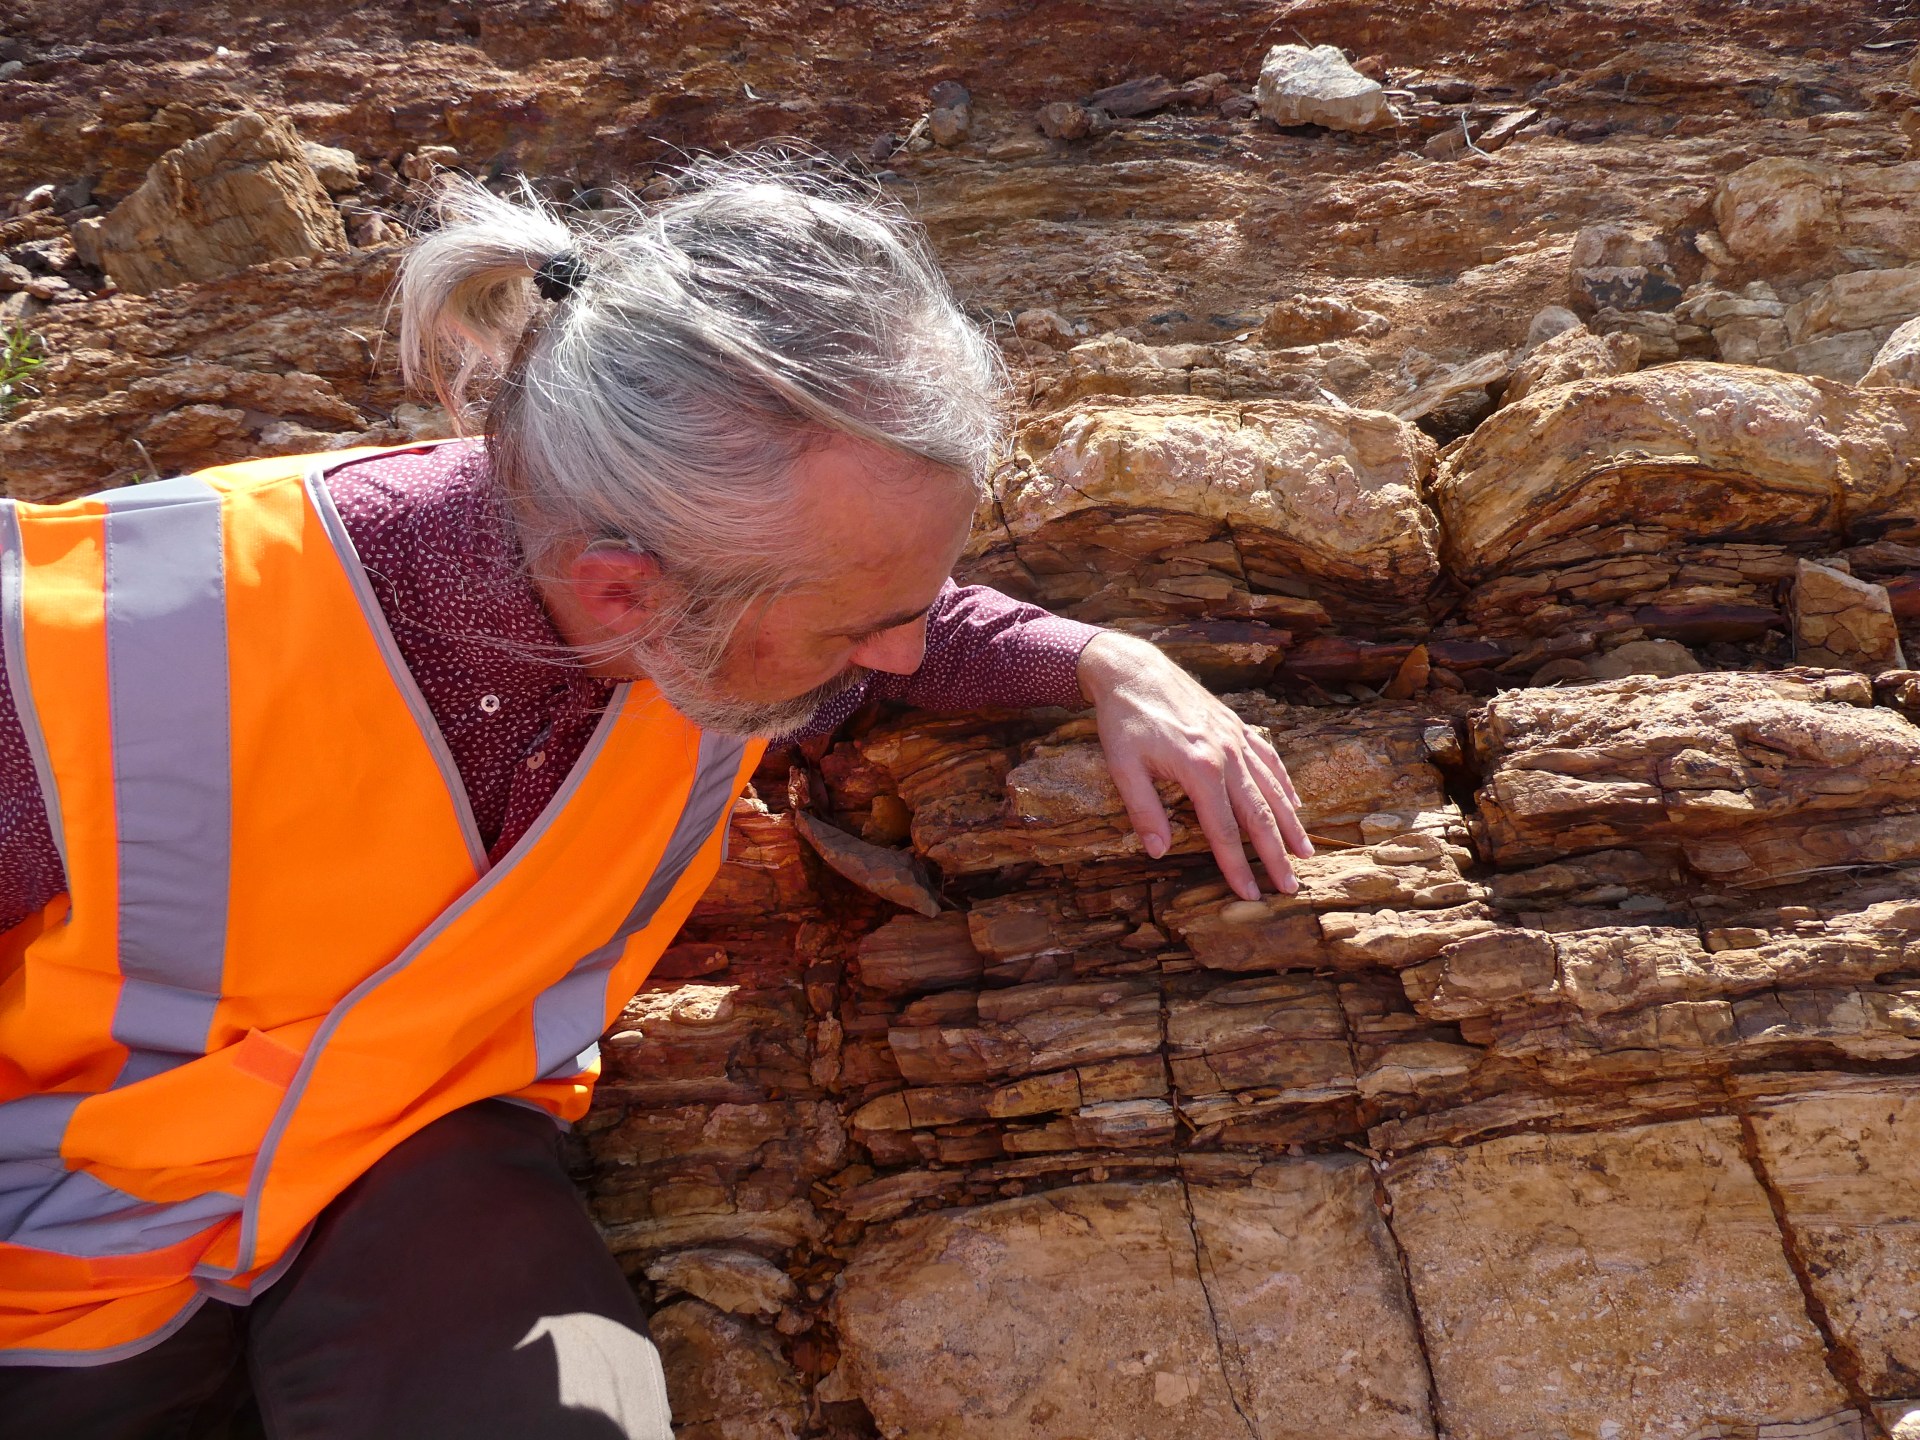 Científicos descubren ‘mundo perdido’ en roca australiana de mil millones de años |  Novedades científicas y tecnológicas